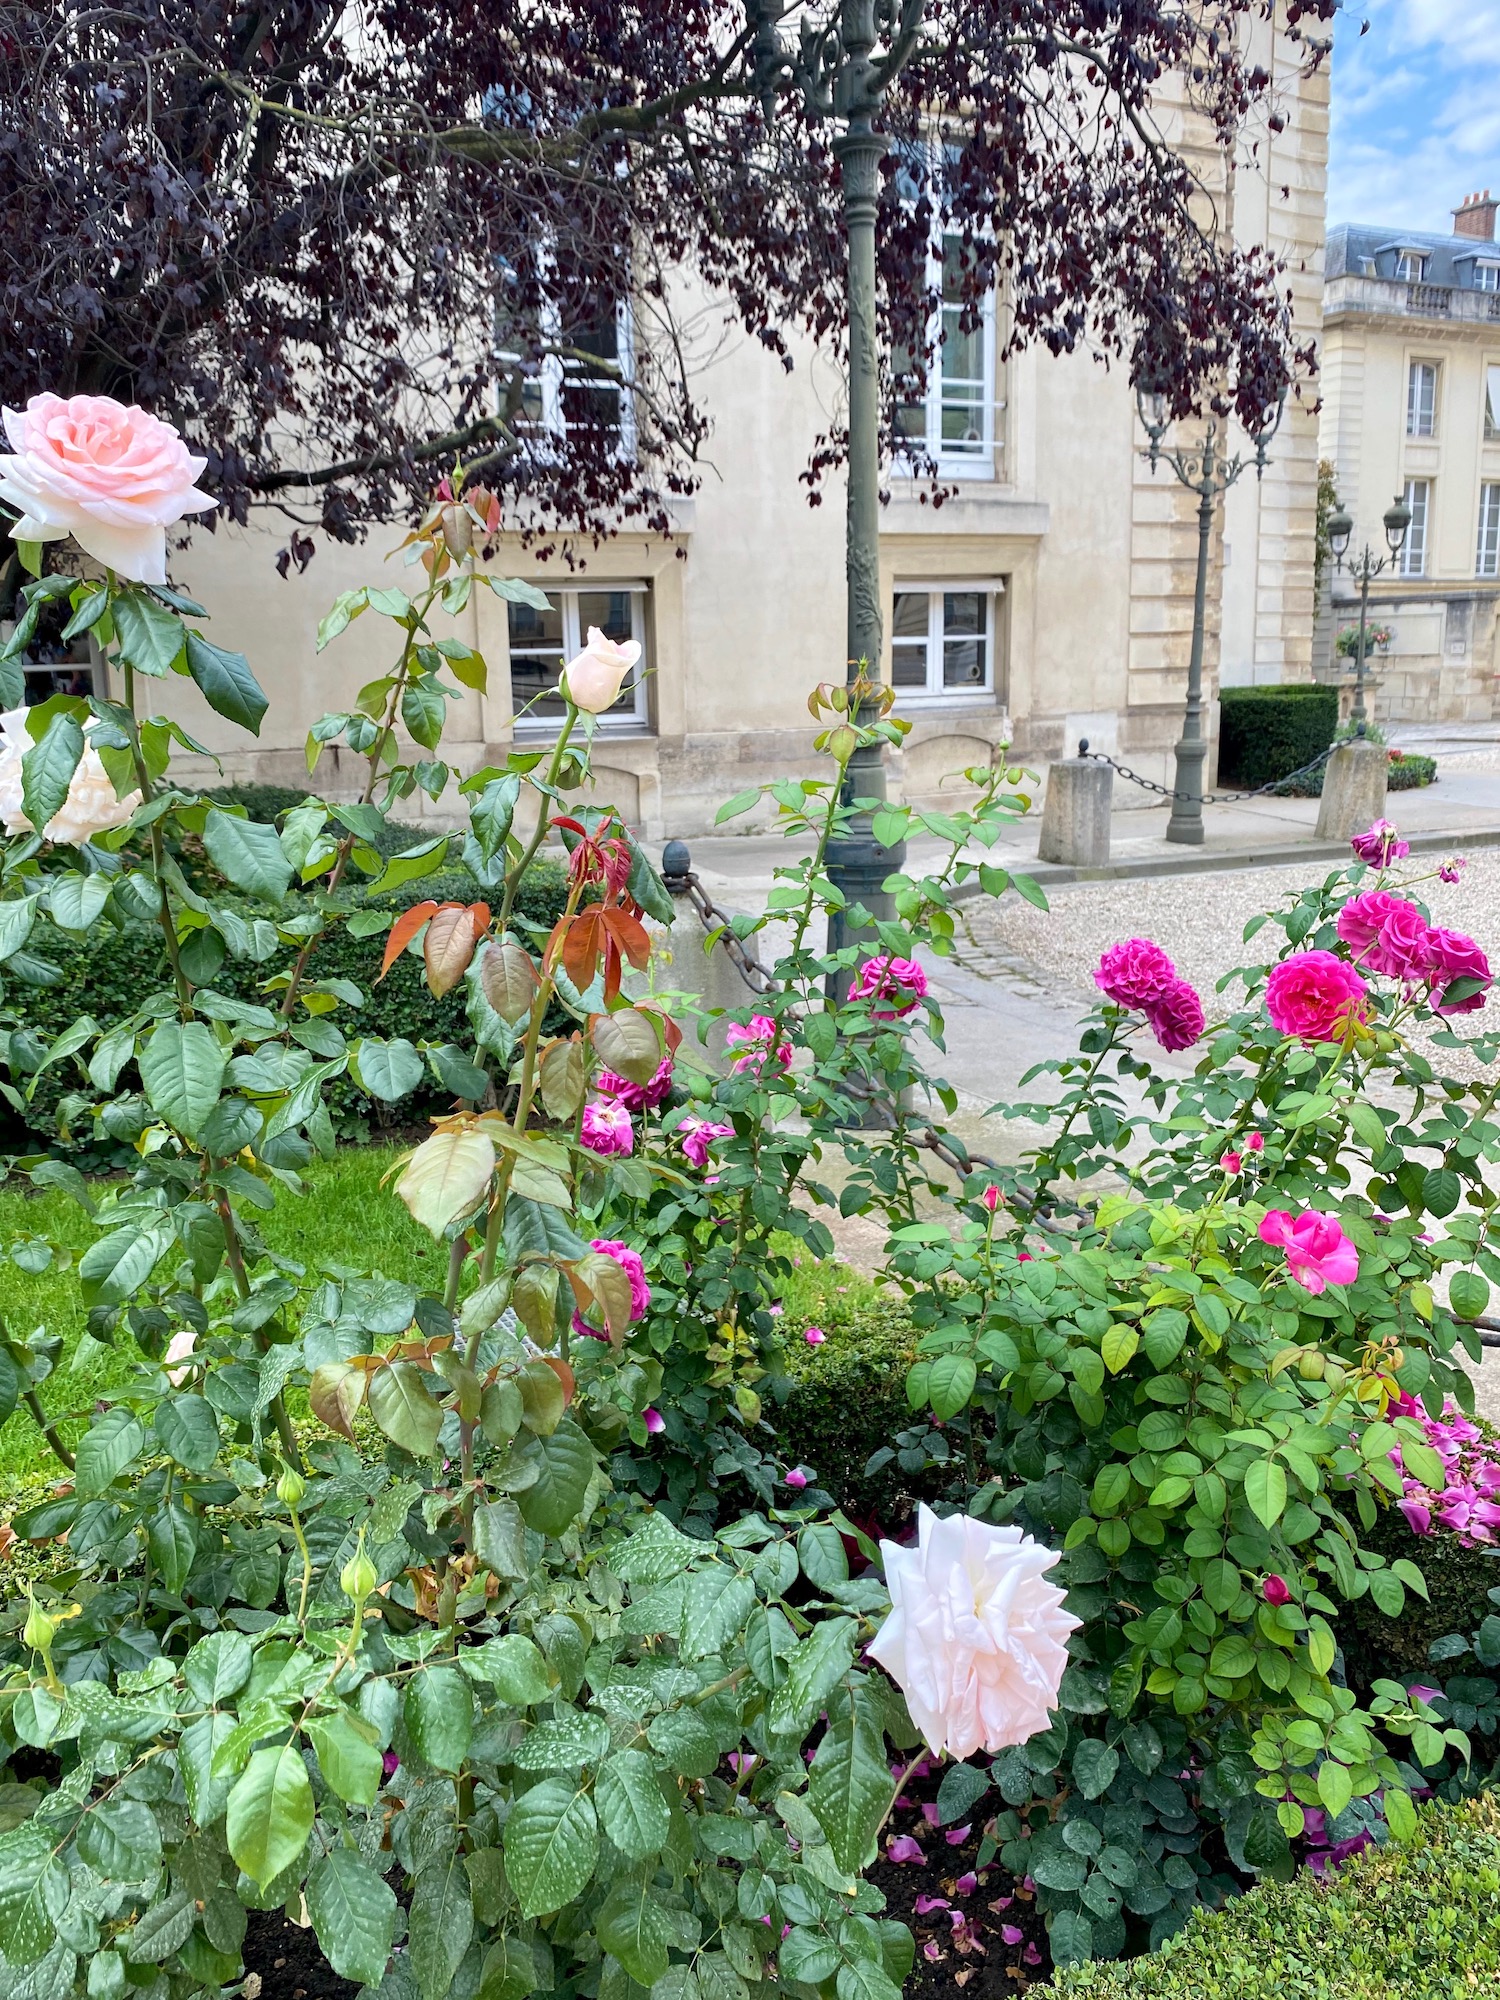 Assemblée Nationale rose garden heritage days visit